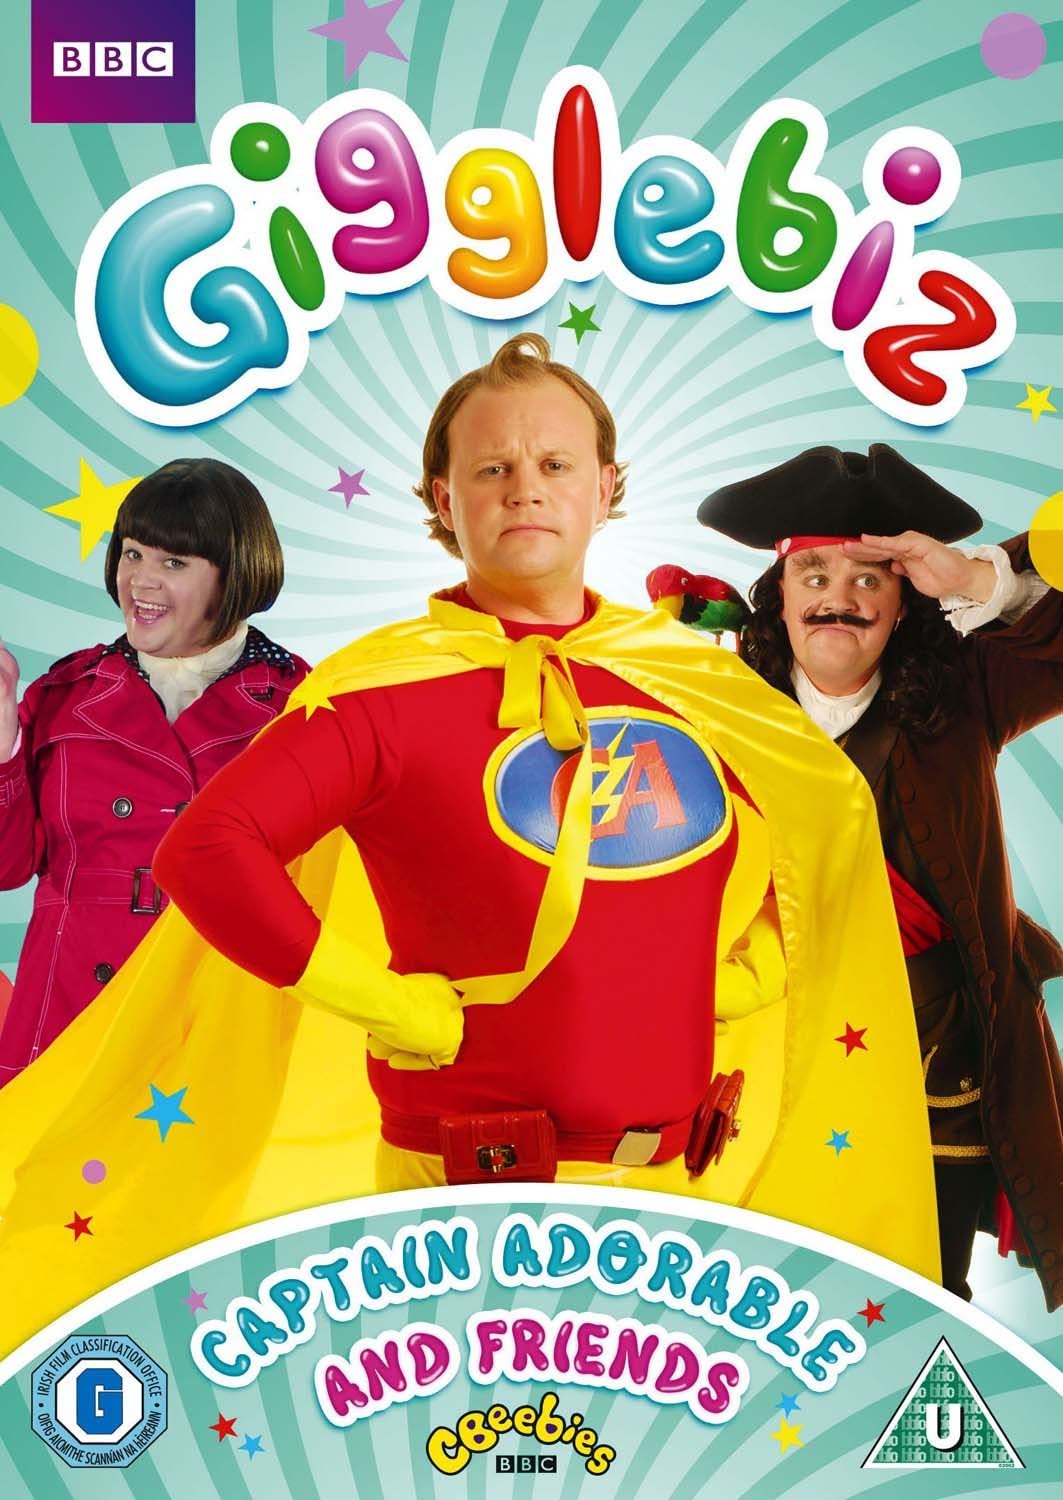 Gigglebiz: Captain Adorable & Friends (CBEEBIES) - Comedy [DVD]